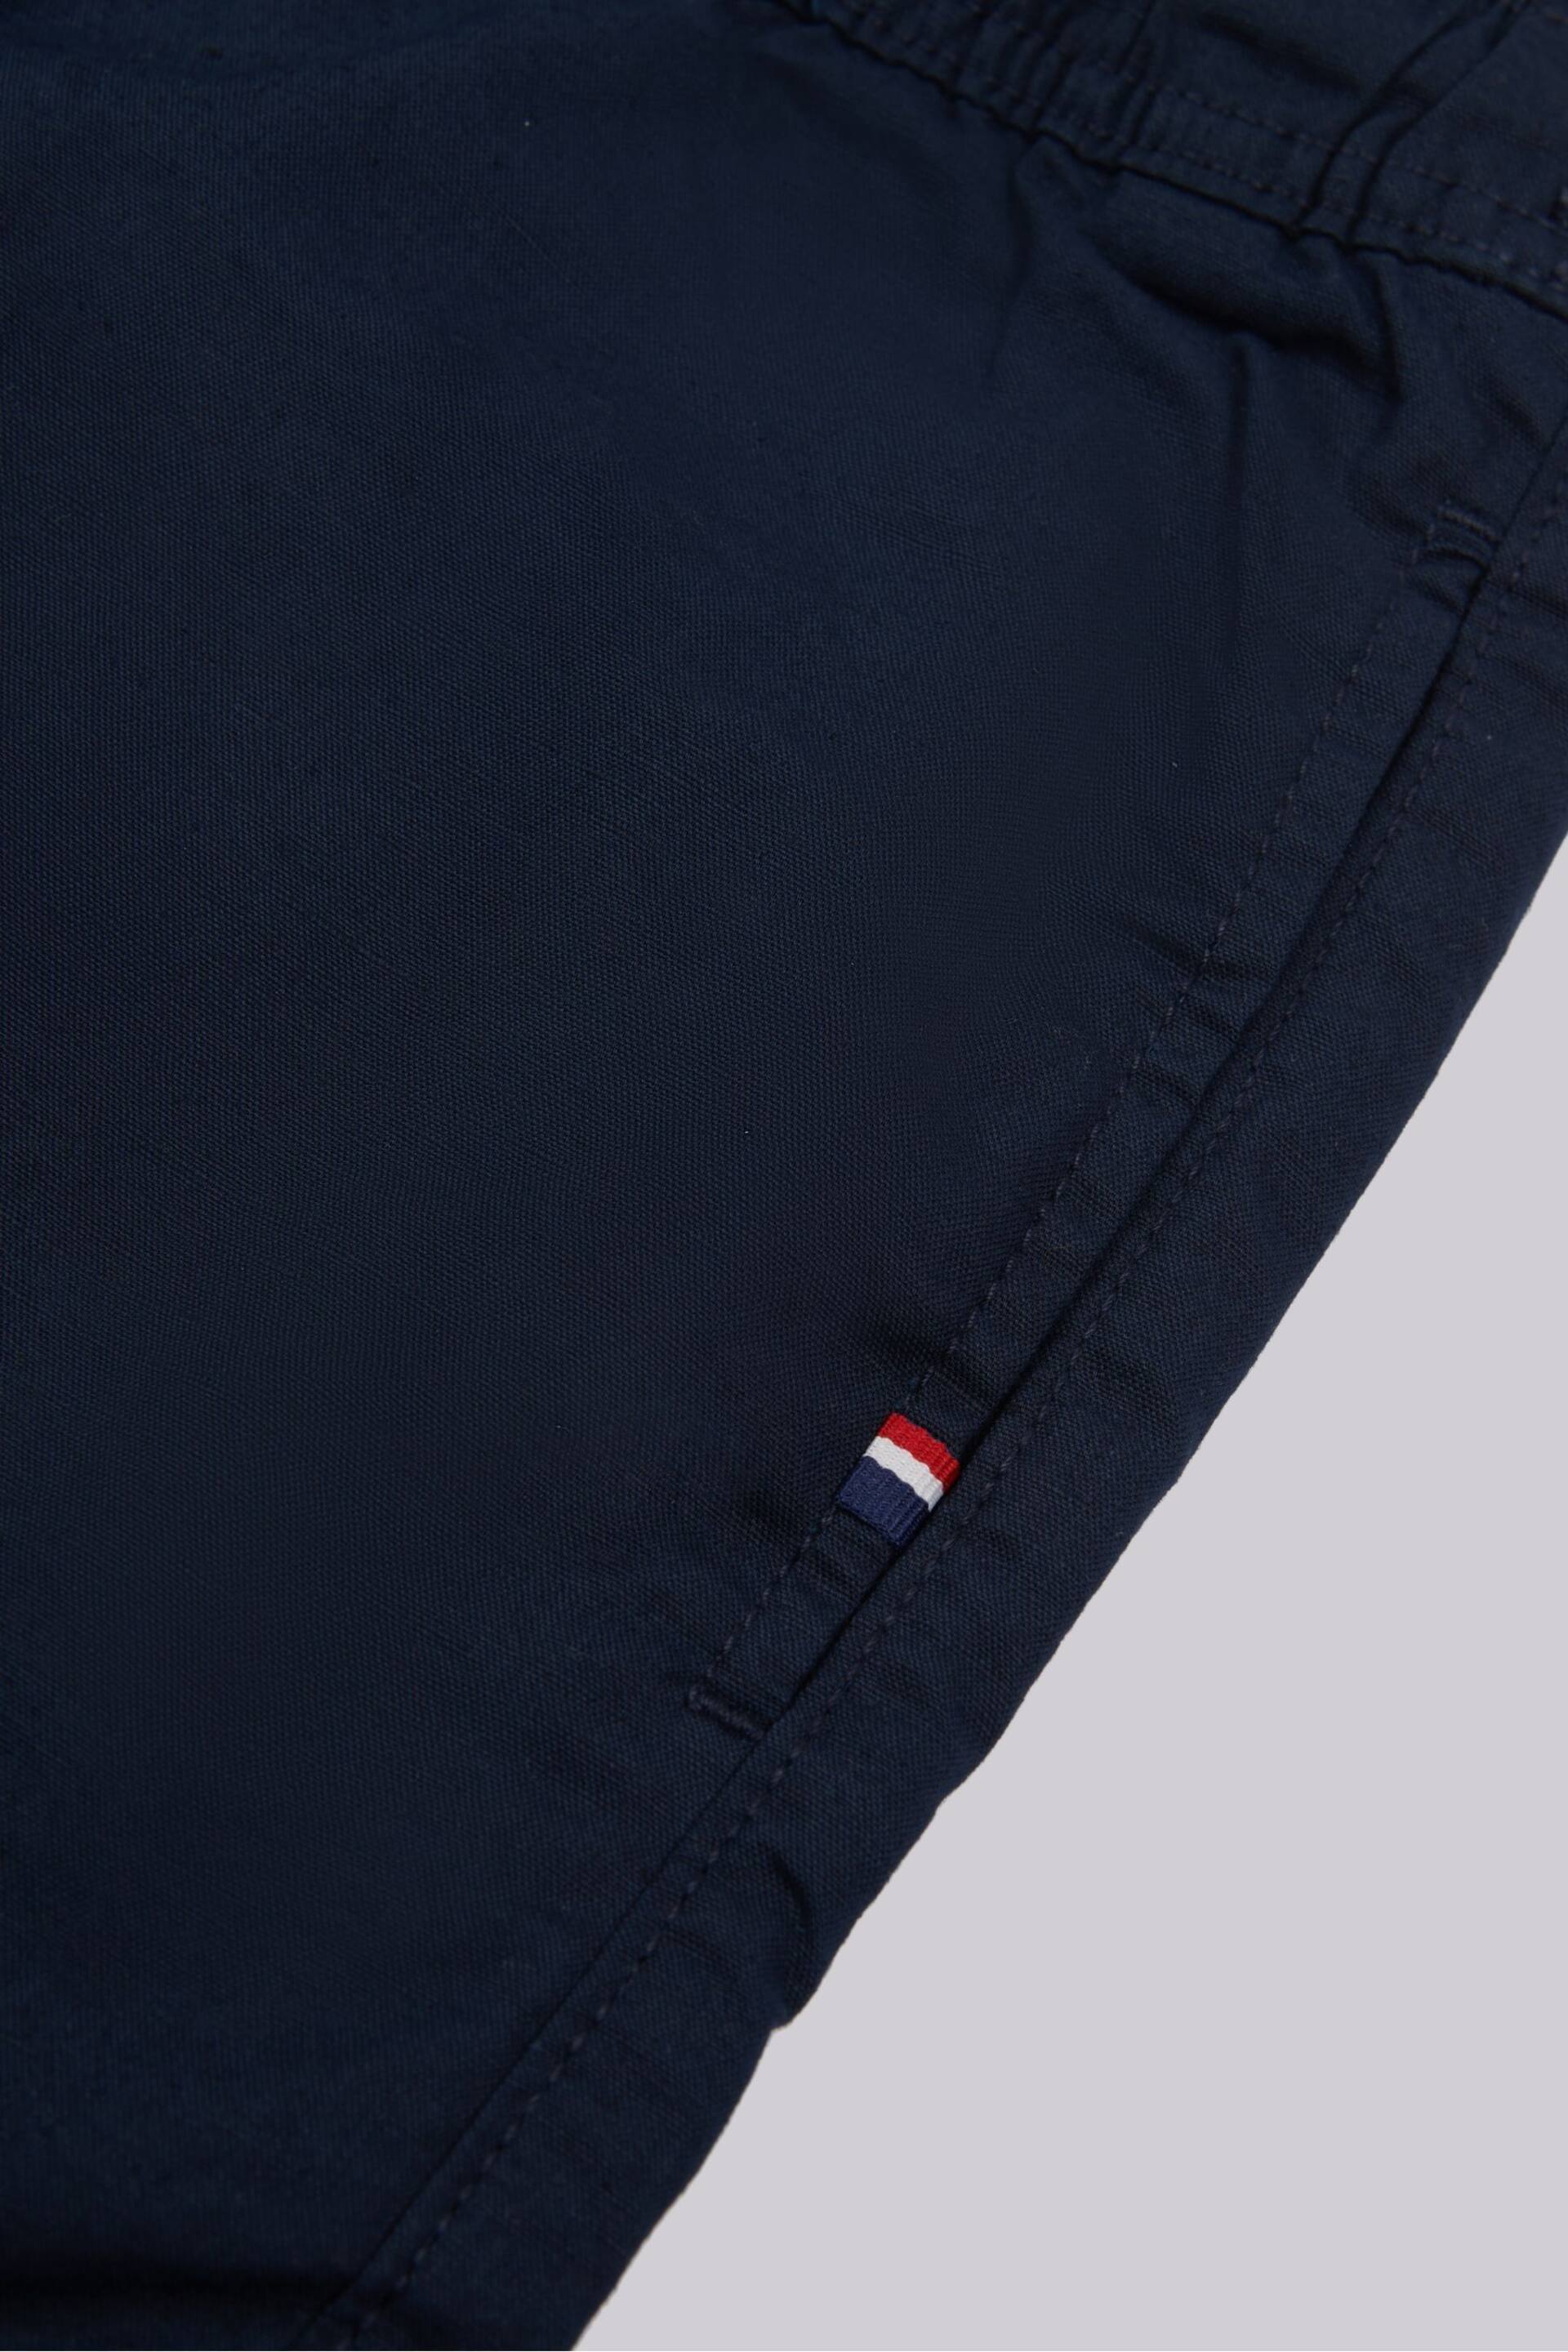 U.S. Polo Assn. Mens Blue Linen Blend Deck Shorts - Image 7 of 8